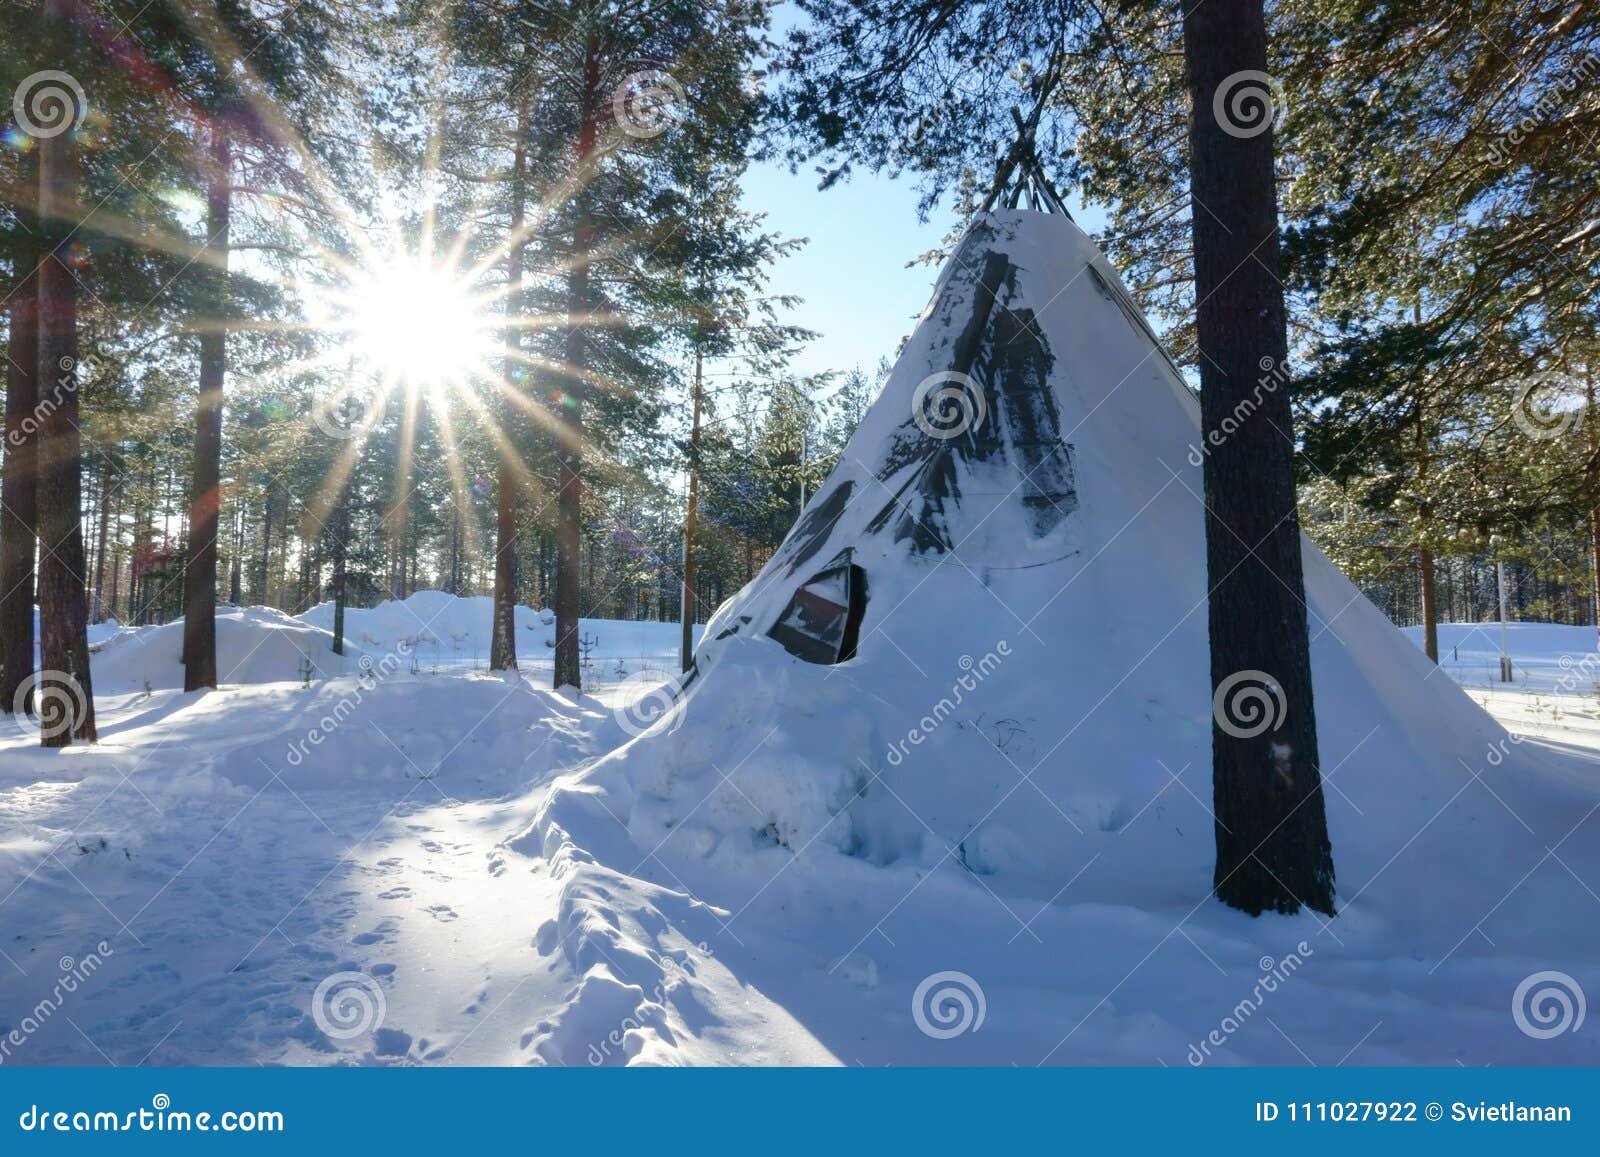 251 Eskimo Tent Stock Photos - Free & Royalty-Free Stock Photos